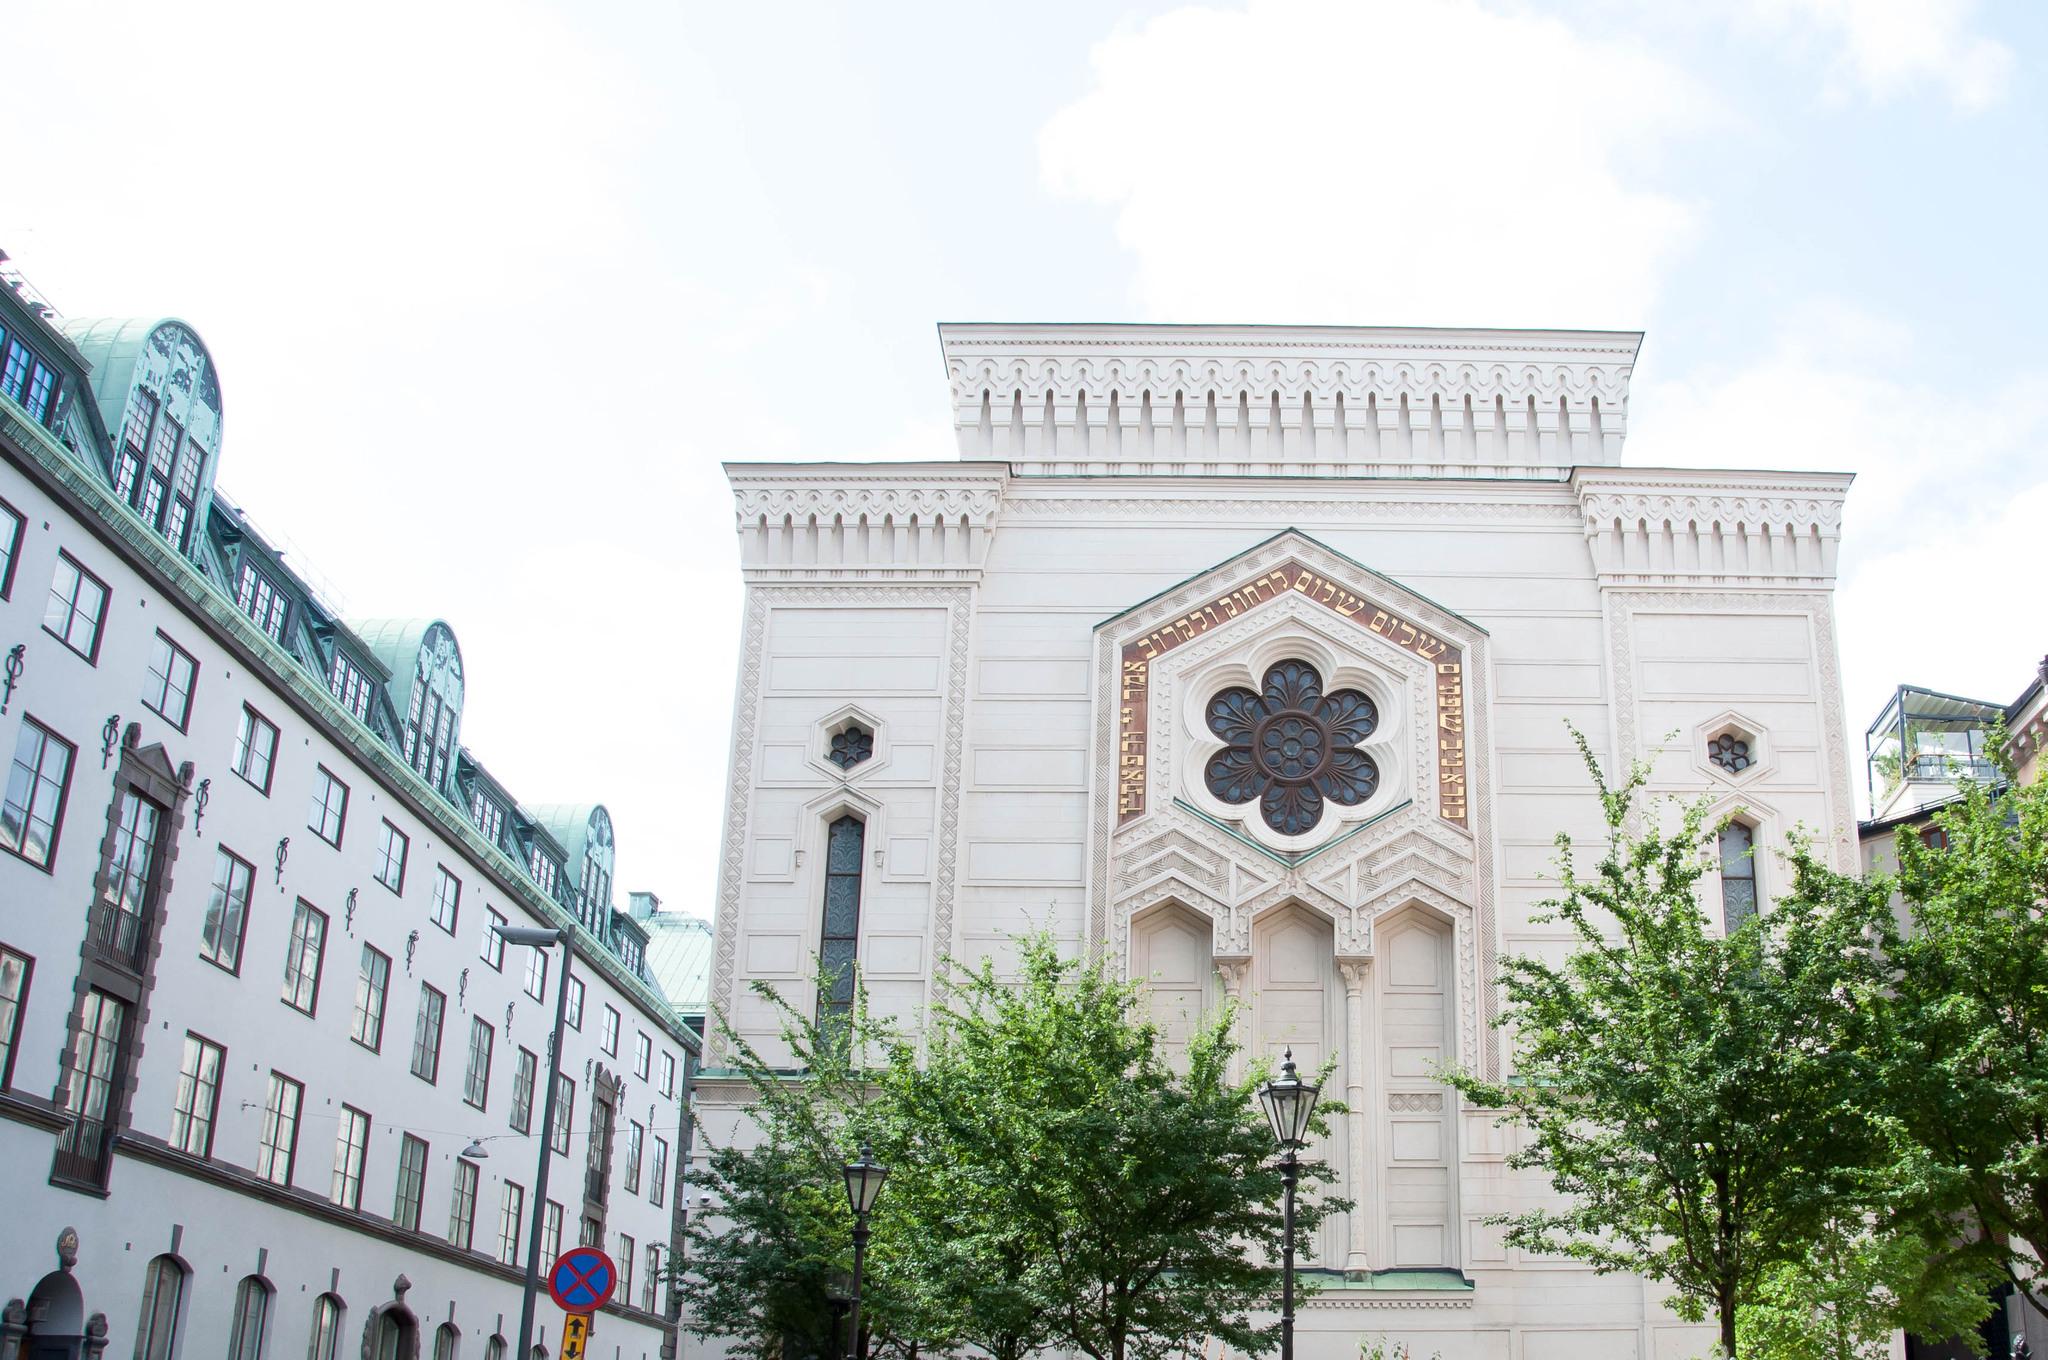 واجهة المعبد اليهودي في ستوكهولم.